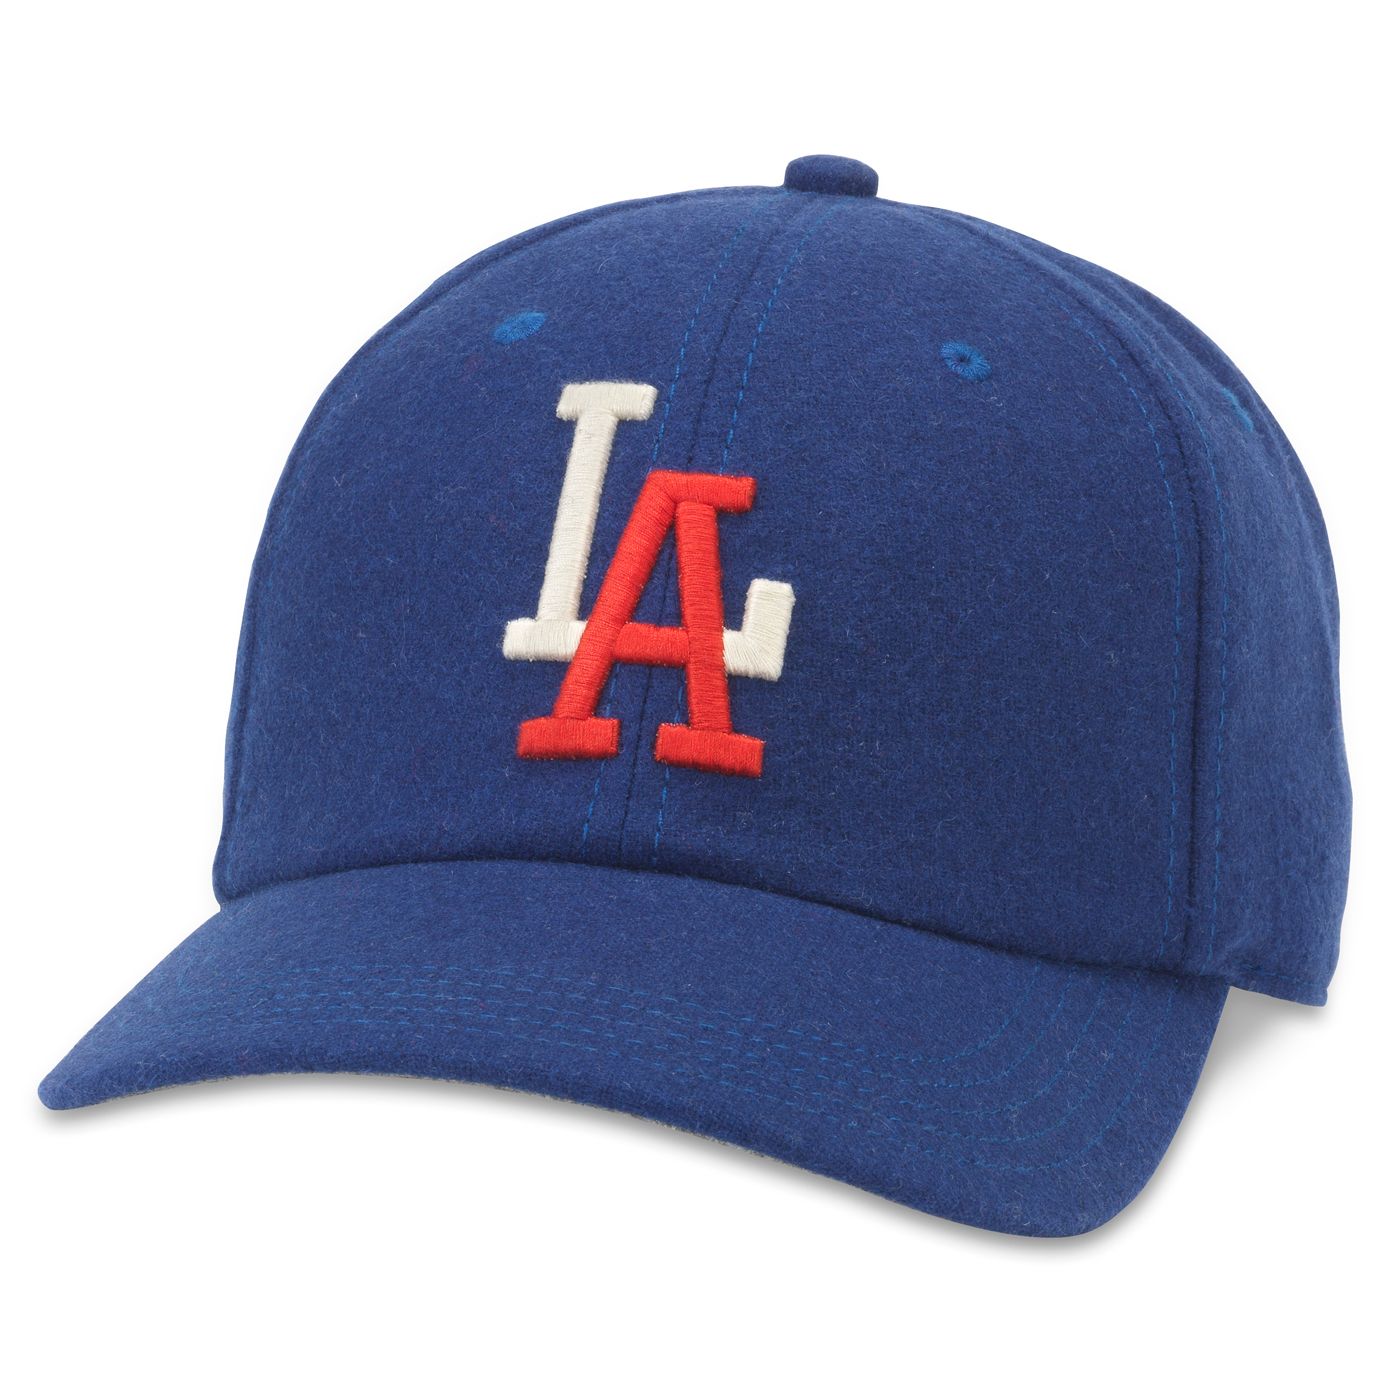 LA ANGELS Archive Legend Hat